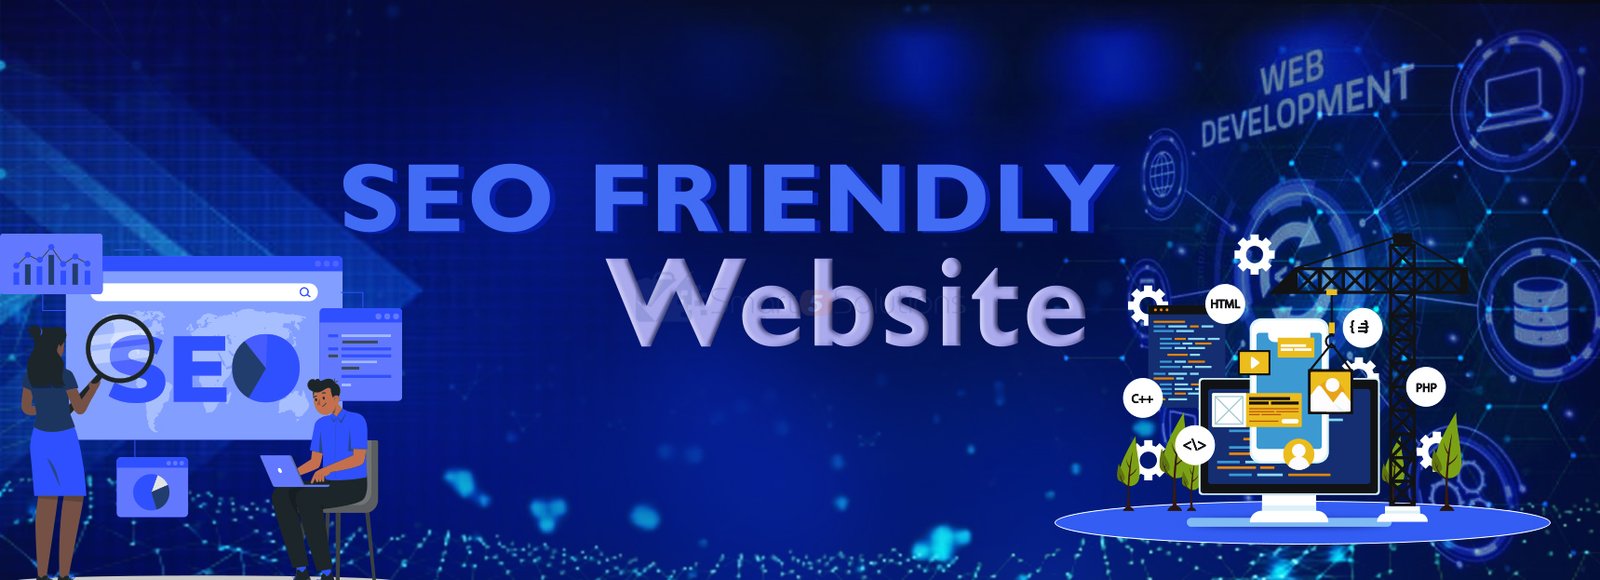 SEO Friendly Websites